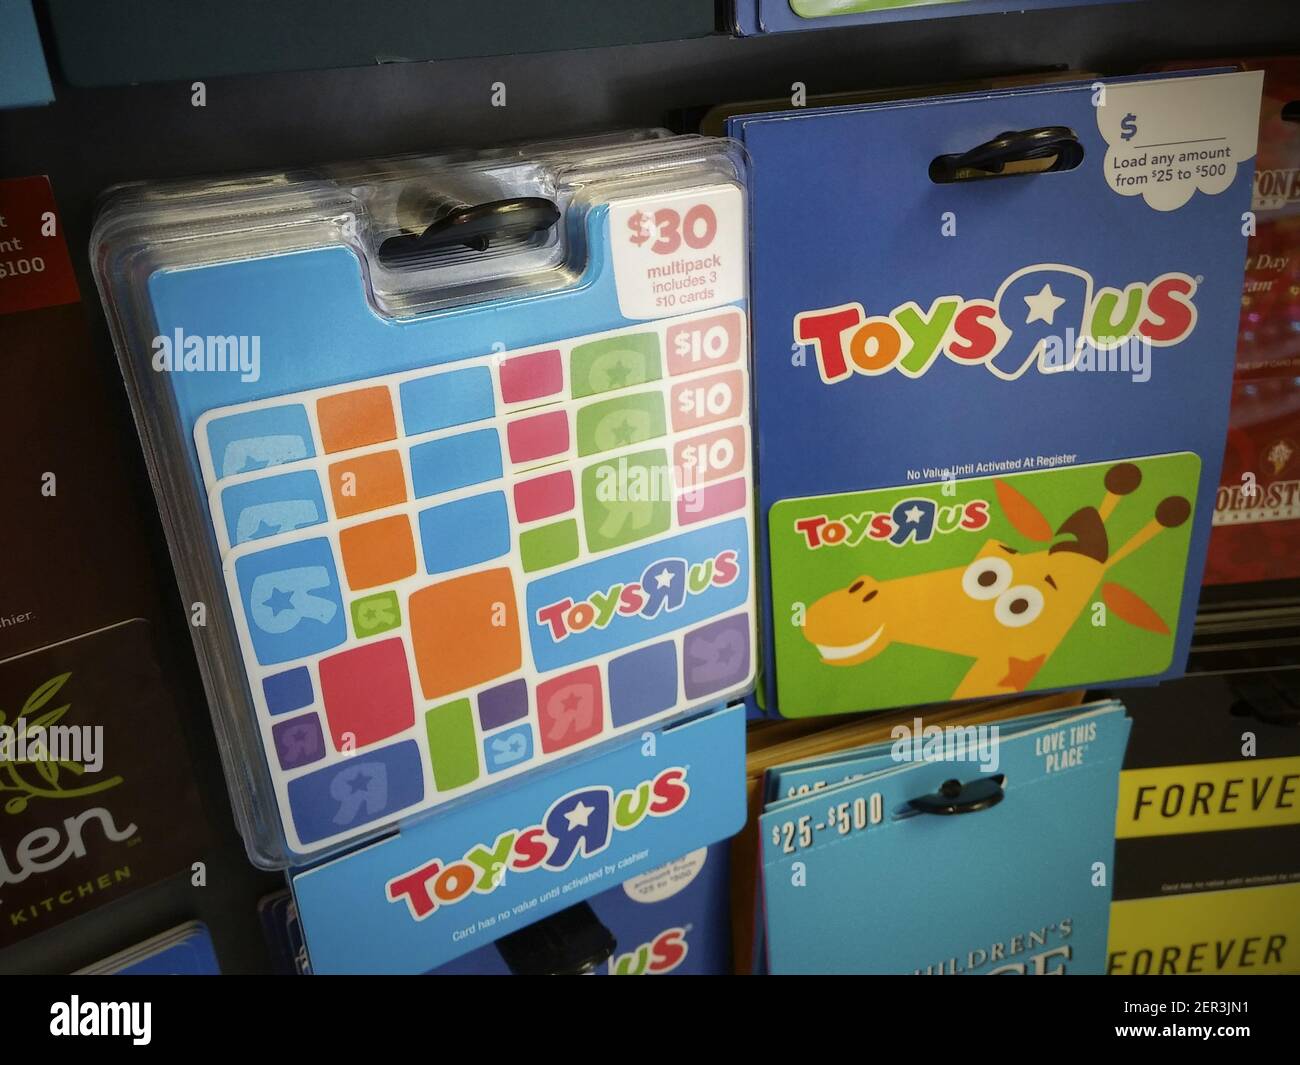 Toys R US carte regalo di marca in un rack in una farmacia a New York  sabato 10 marzo 2018. Bed Bath & Beyond ha annunciato che prenderà le carte regalo  Toys